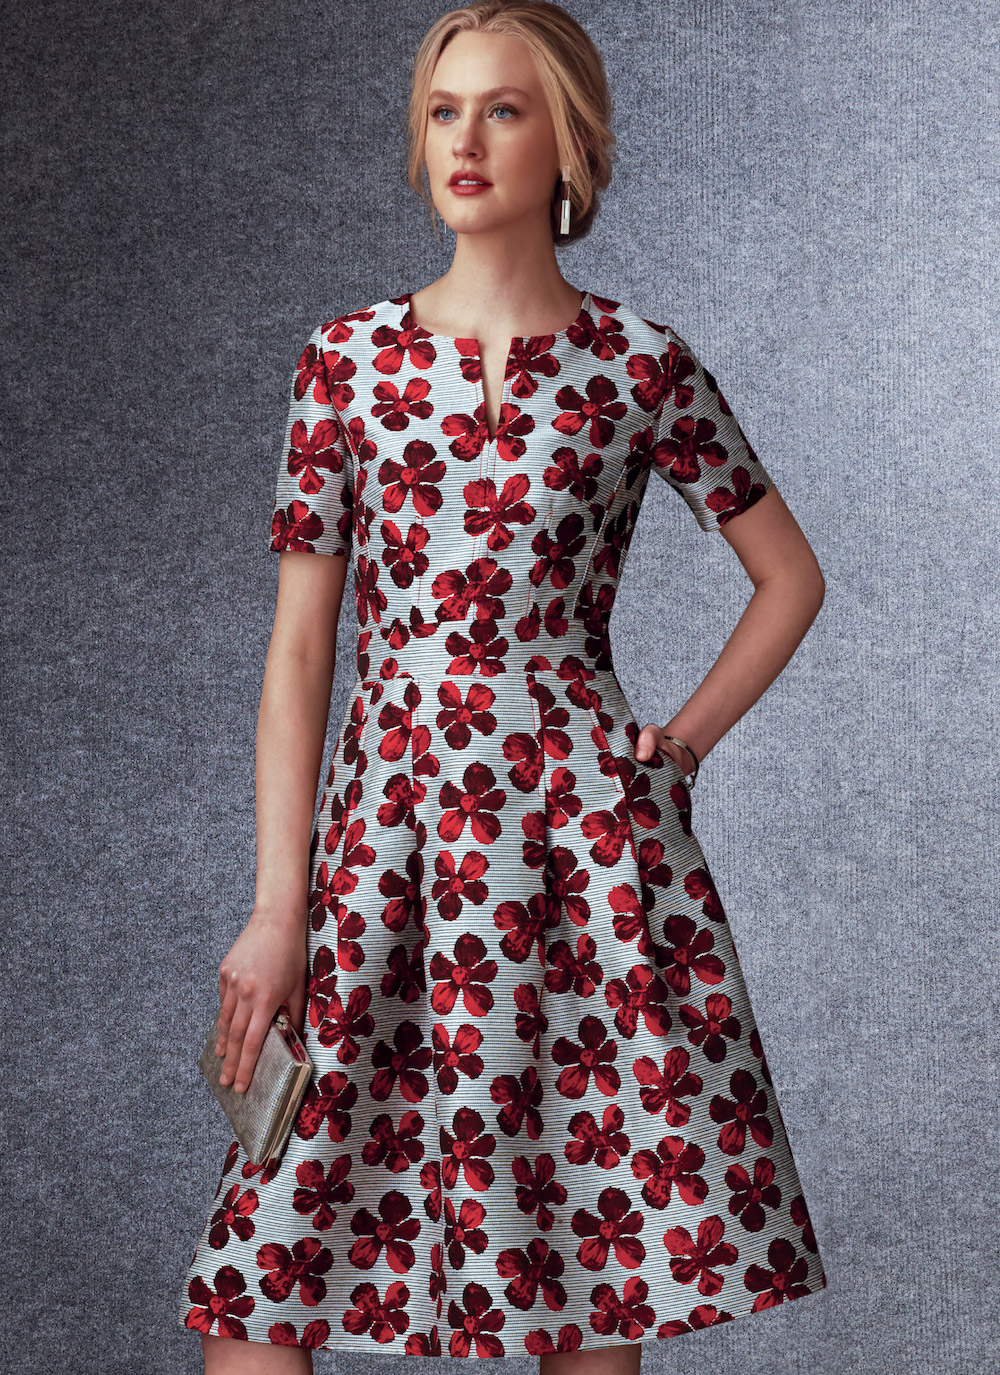 Vogue® Patterns Papierschnittmuster Damen - Kleid - V1737